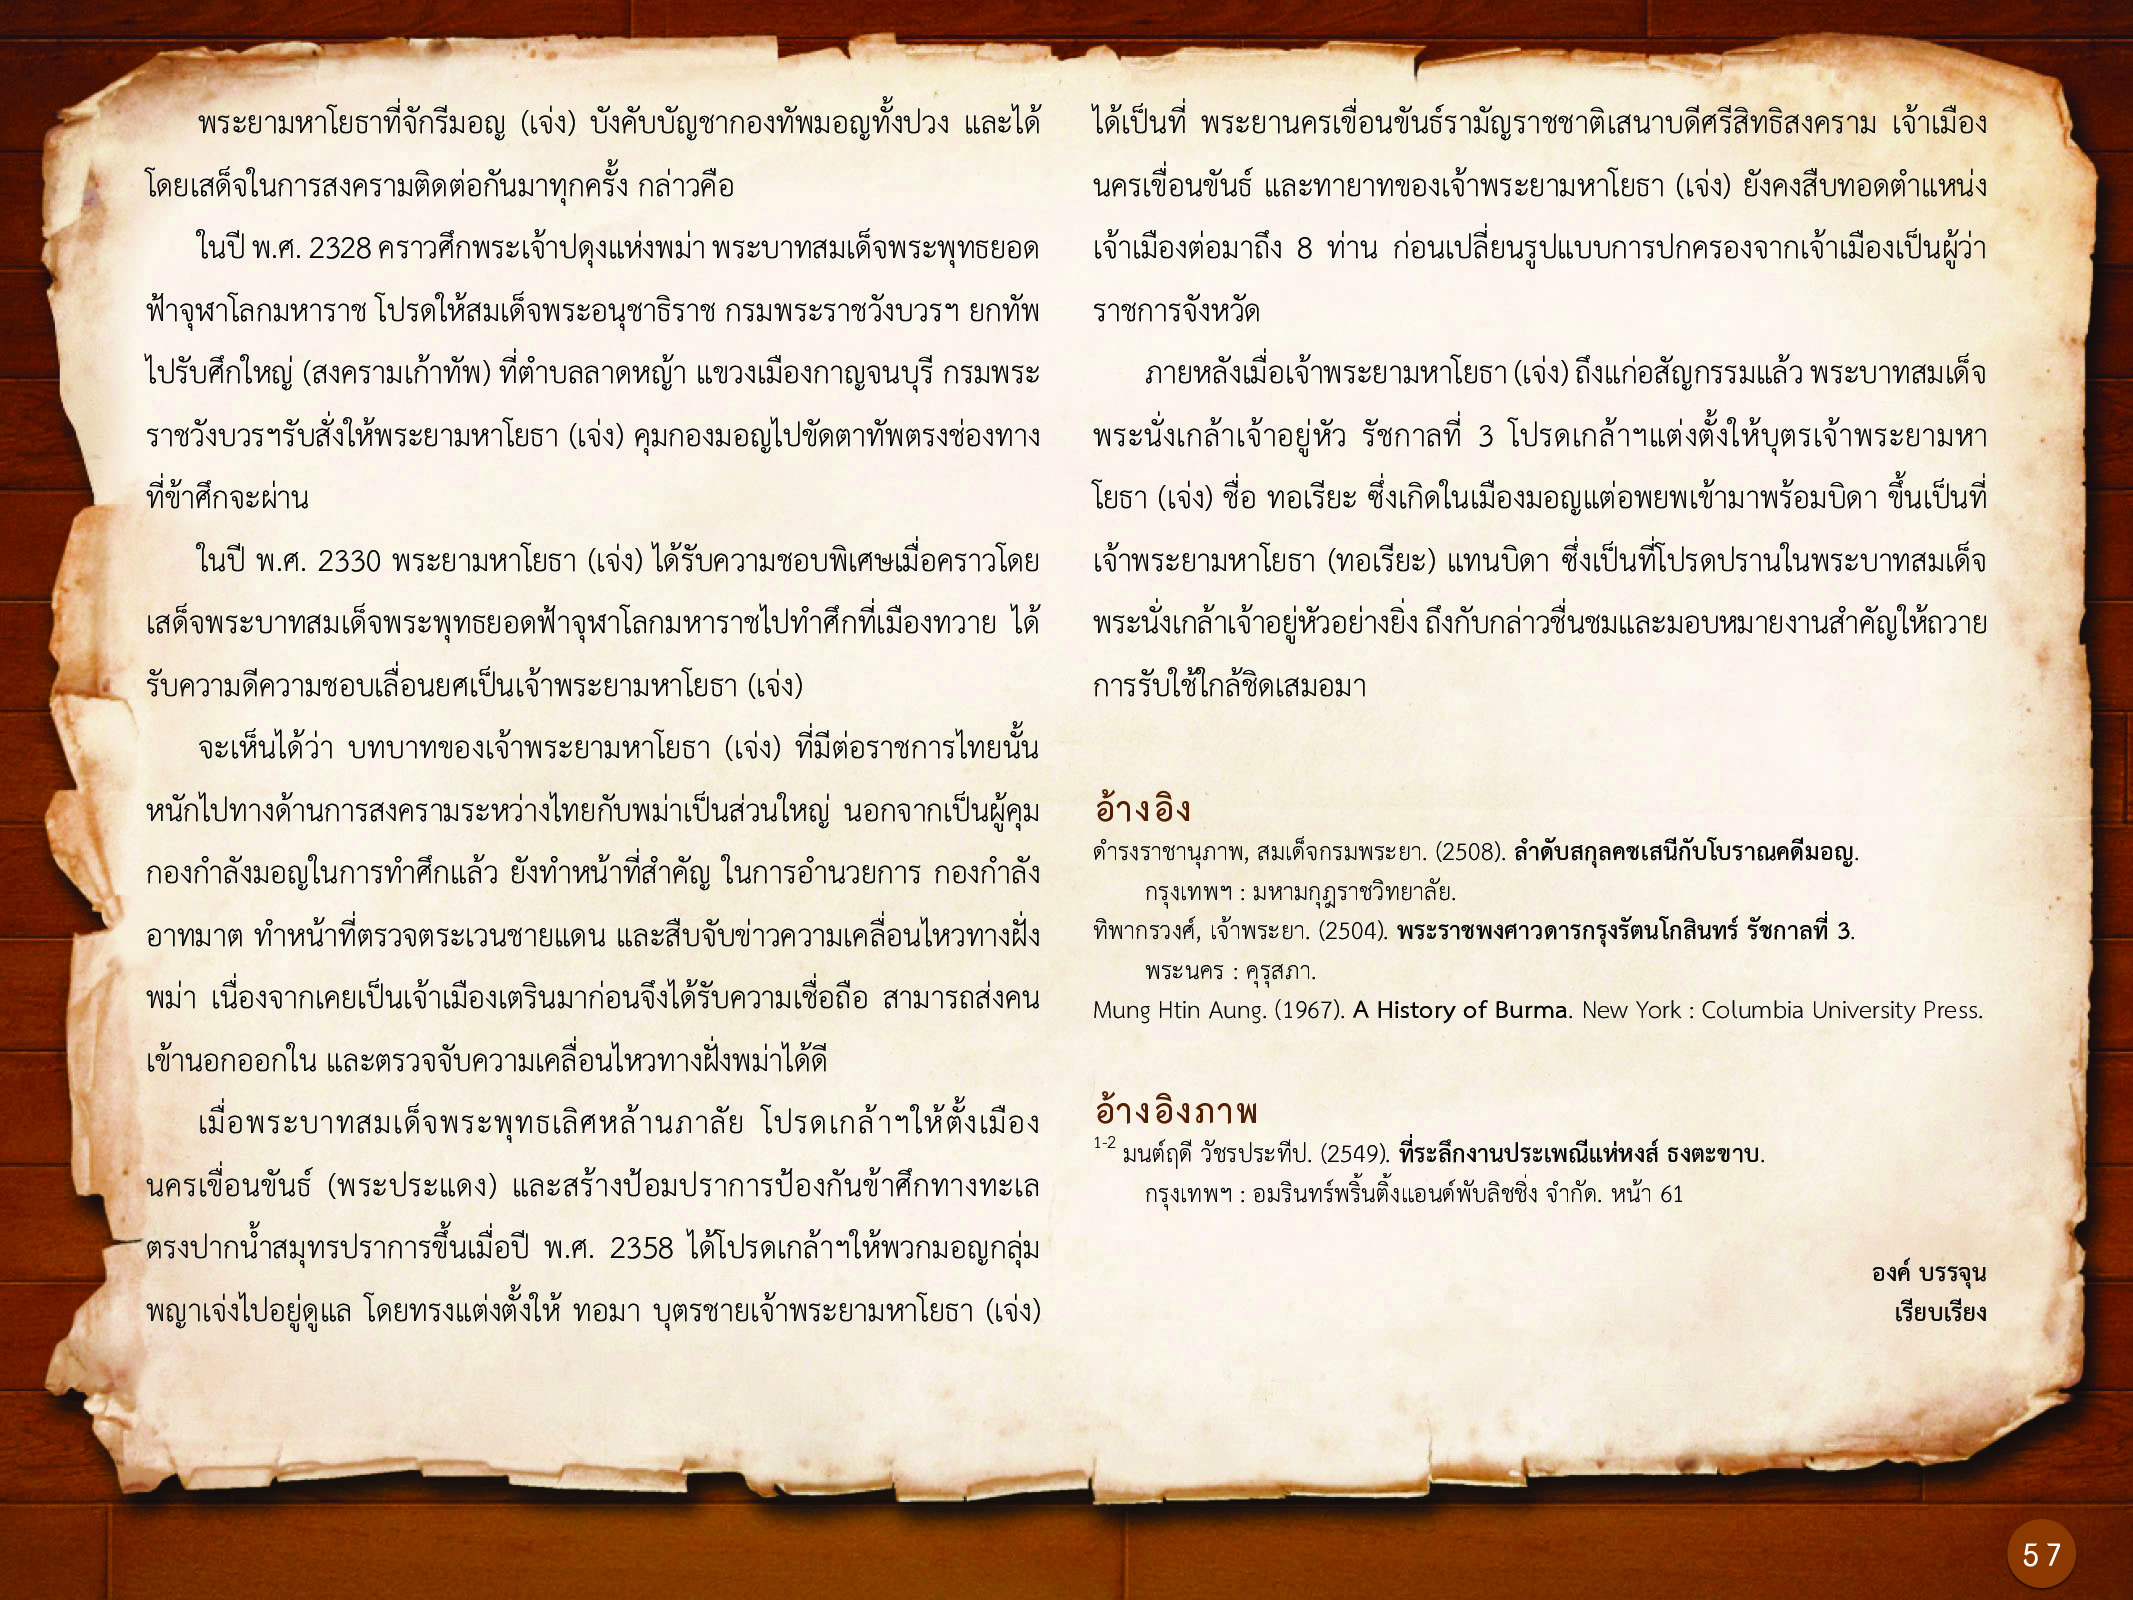 ประวัติศาสตร์กรุงธนบุรี ./images/history_dhonburi/57.jpg